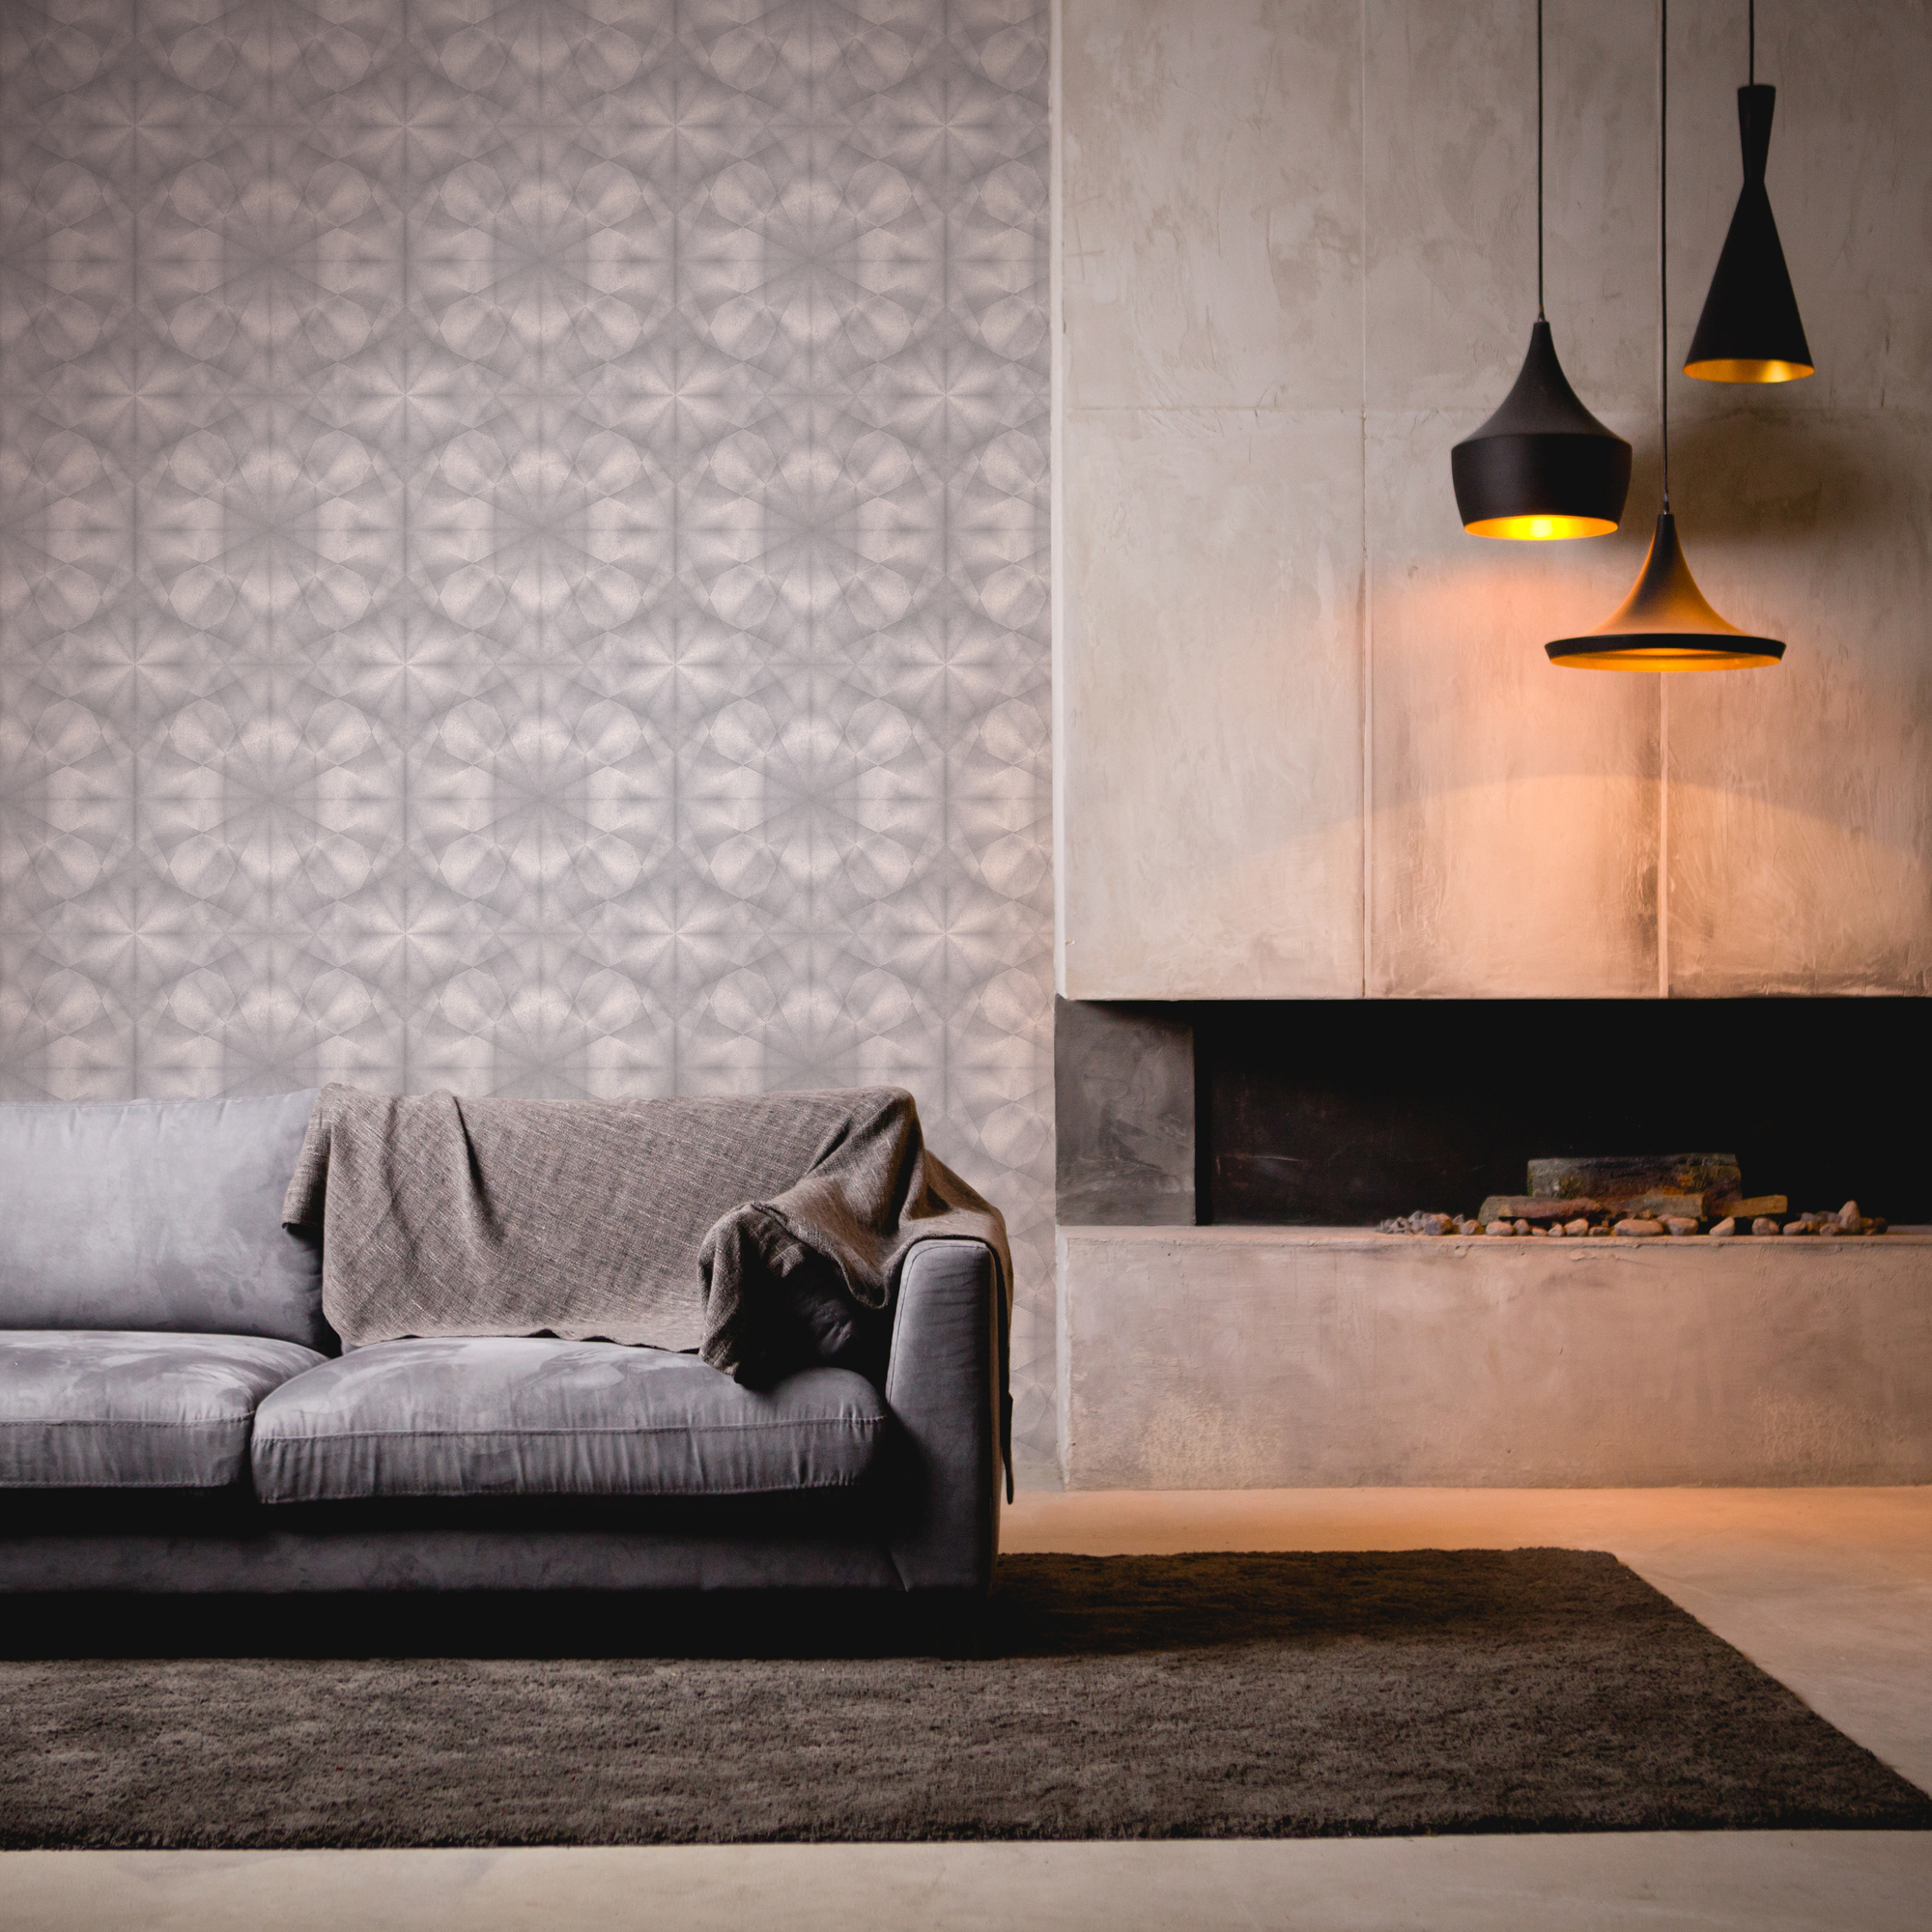 Vliestapete 'My Home. My Spa.' Grafik Beton 3D grau 10,05 x 0,53 m + product picture